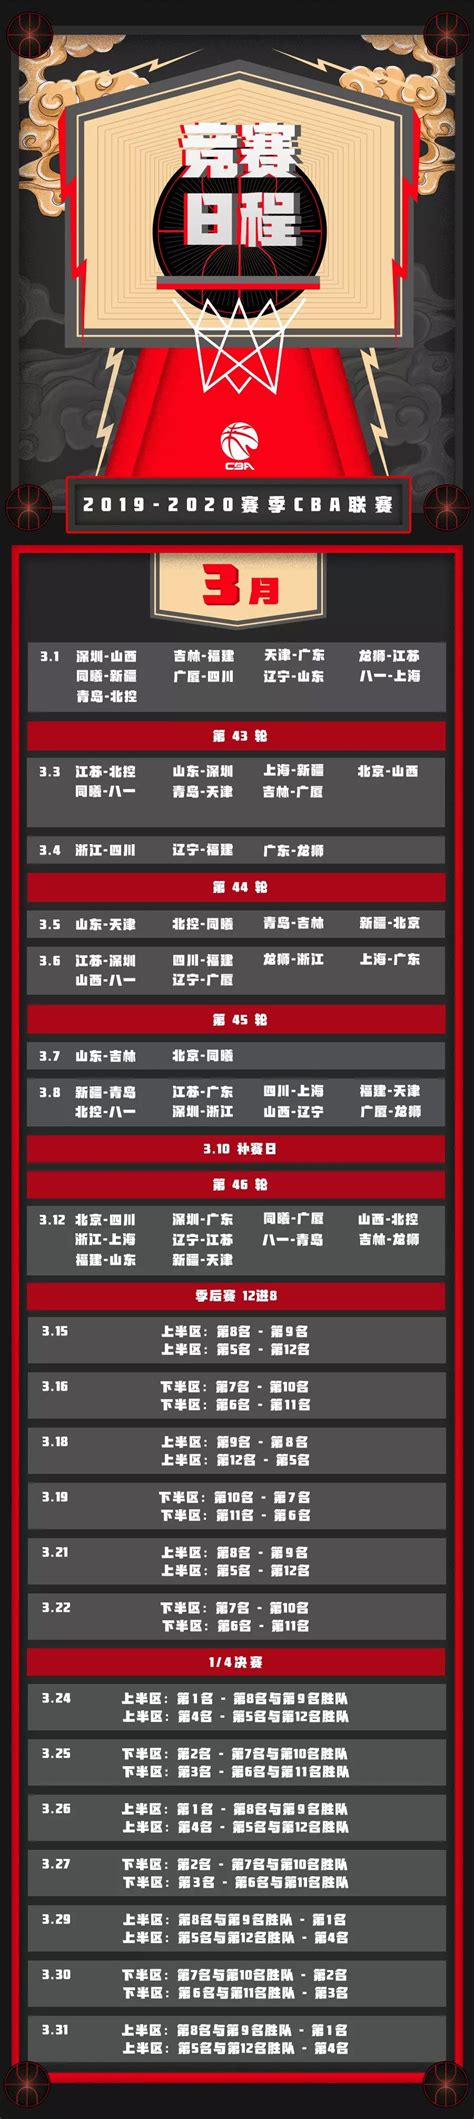 2019-2020赛季CBA联赛赛程表 - 深圳本地宝